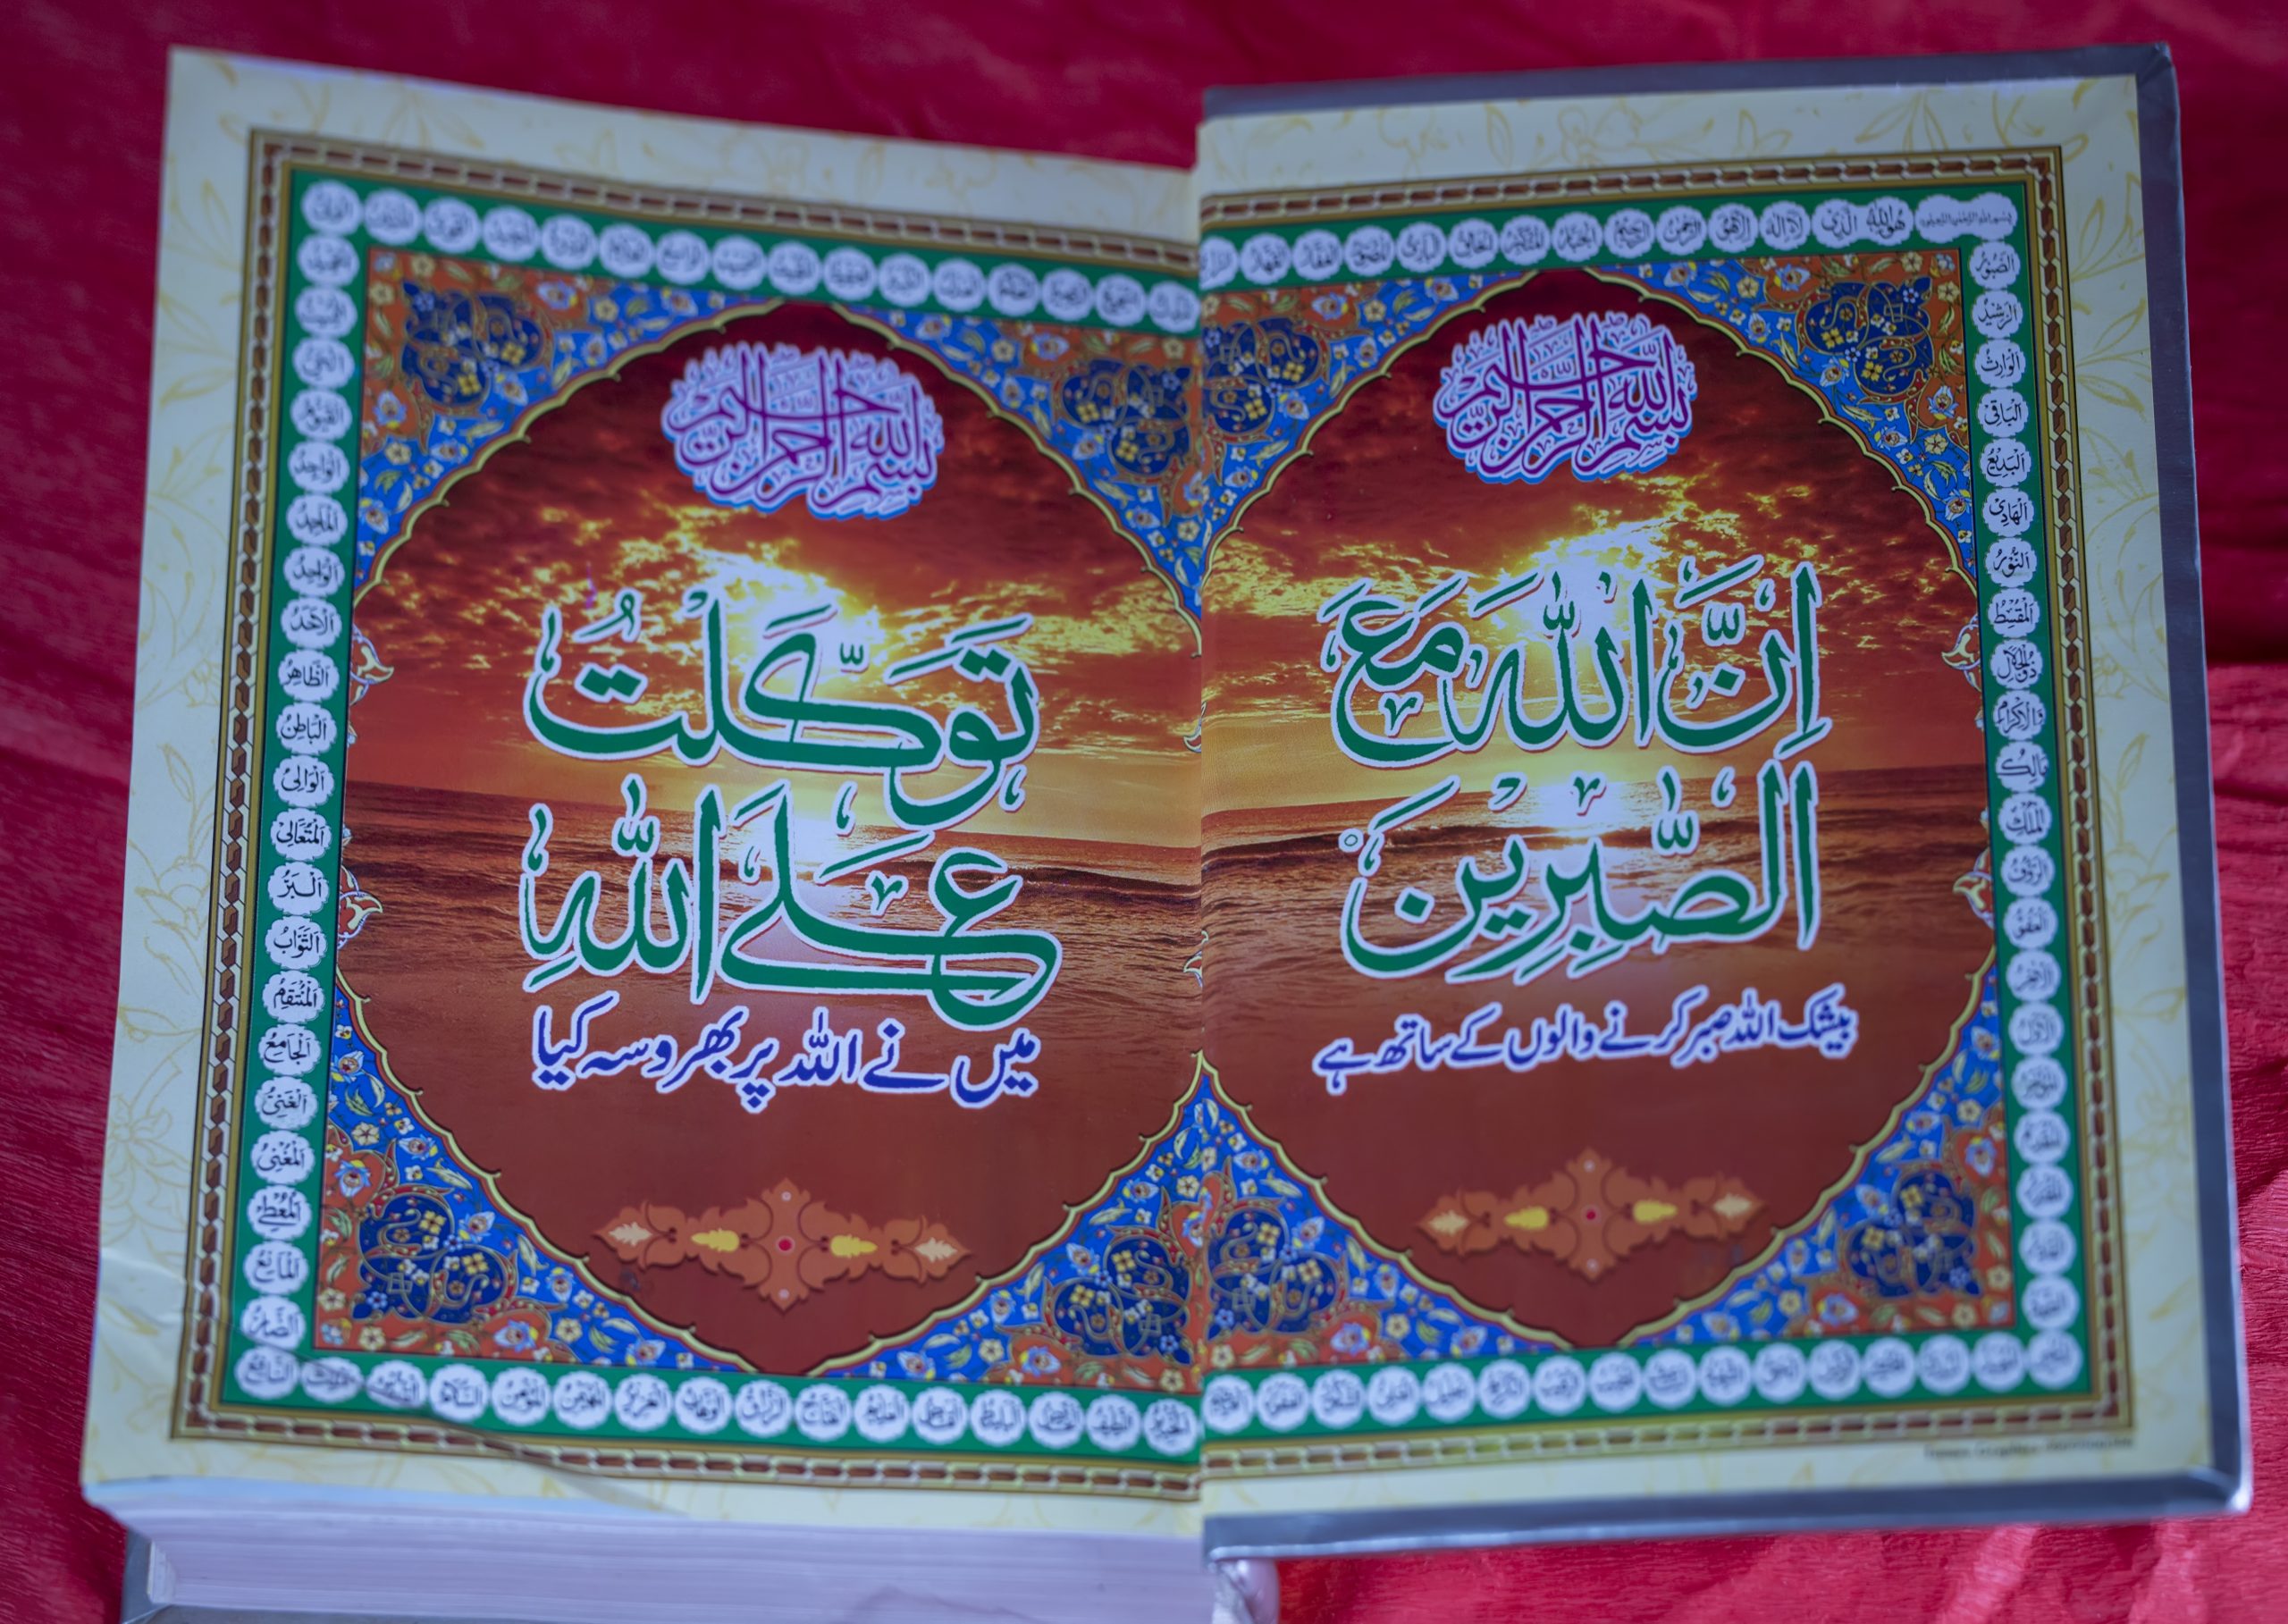 A religious book in Urdu